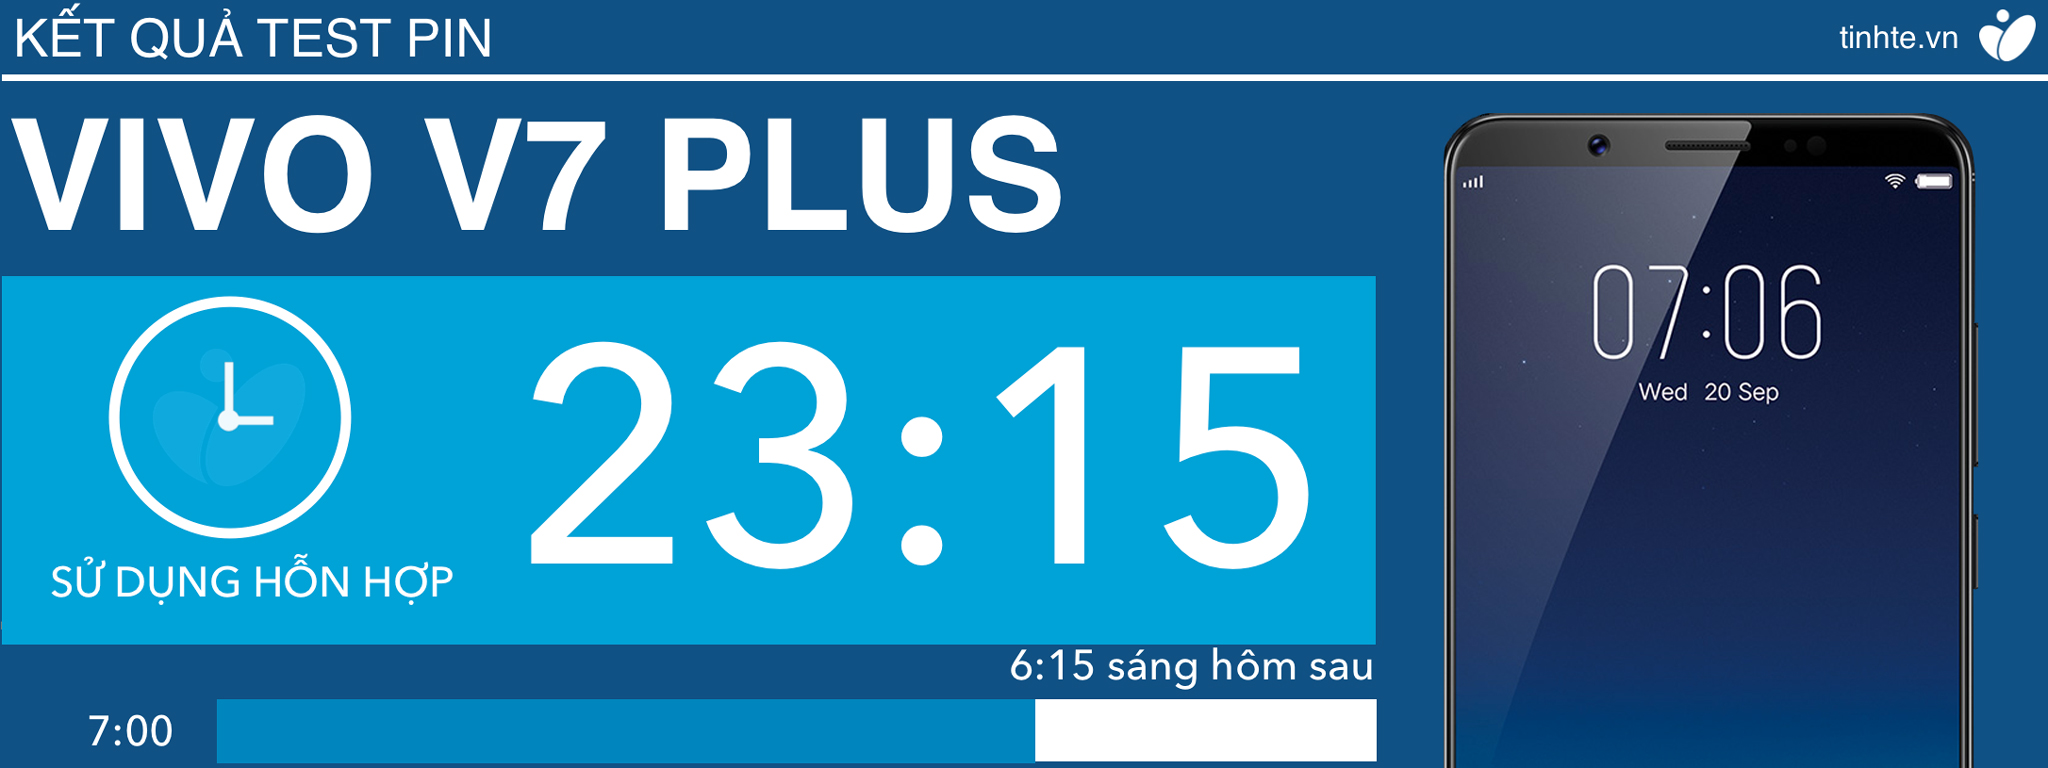 Chi tiết thời lượng pin Vivo V7+: sử dụng hỗn hợp được gần 1 ngày